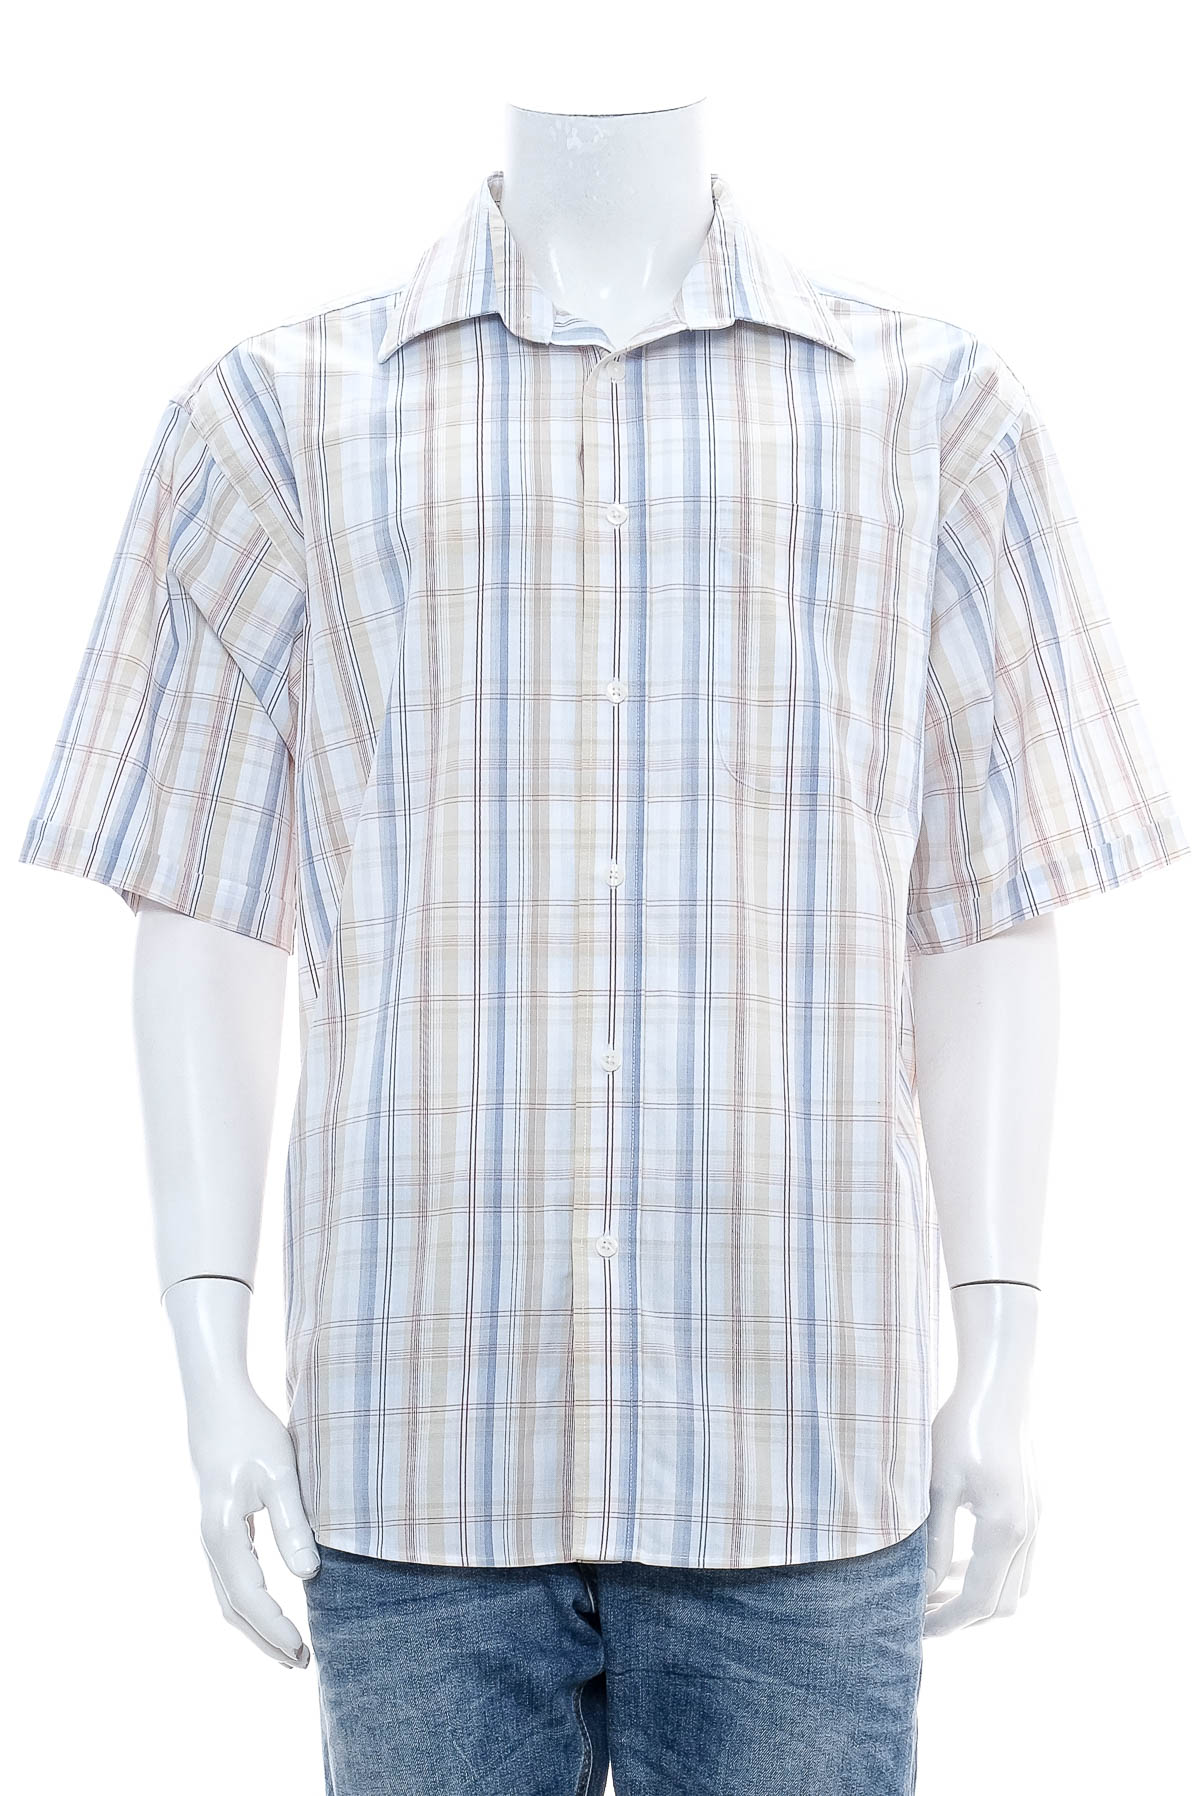 Ανδρικό πουκάμισο - TCM - 0